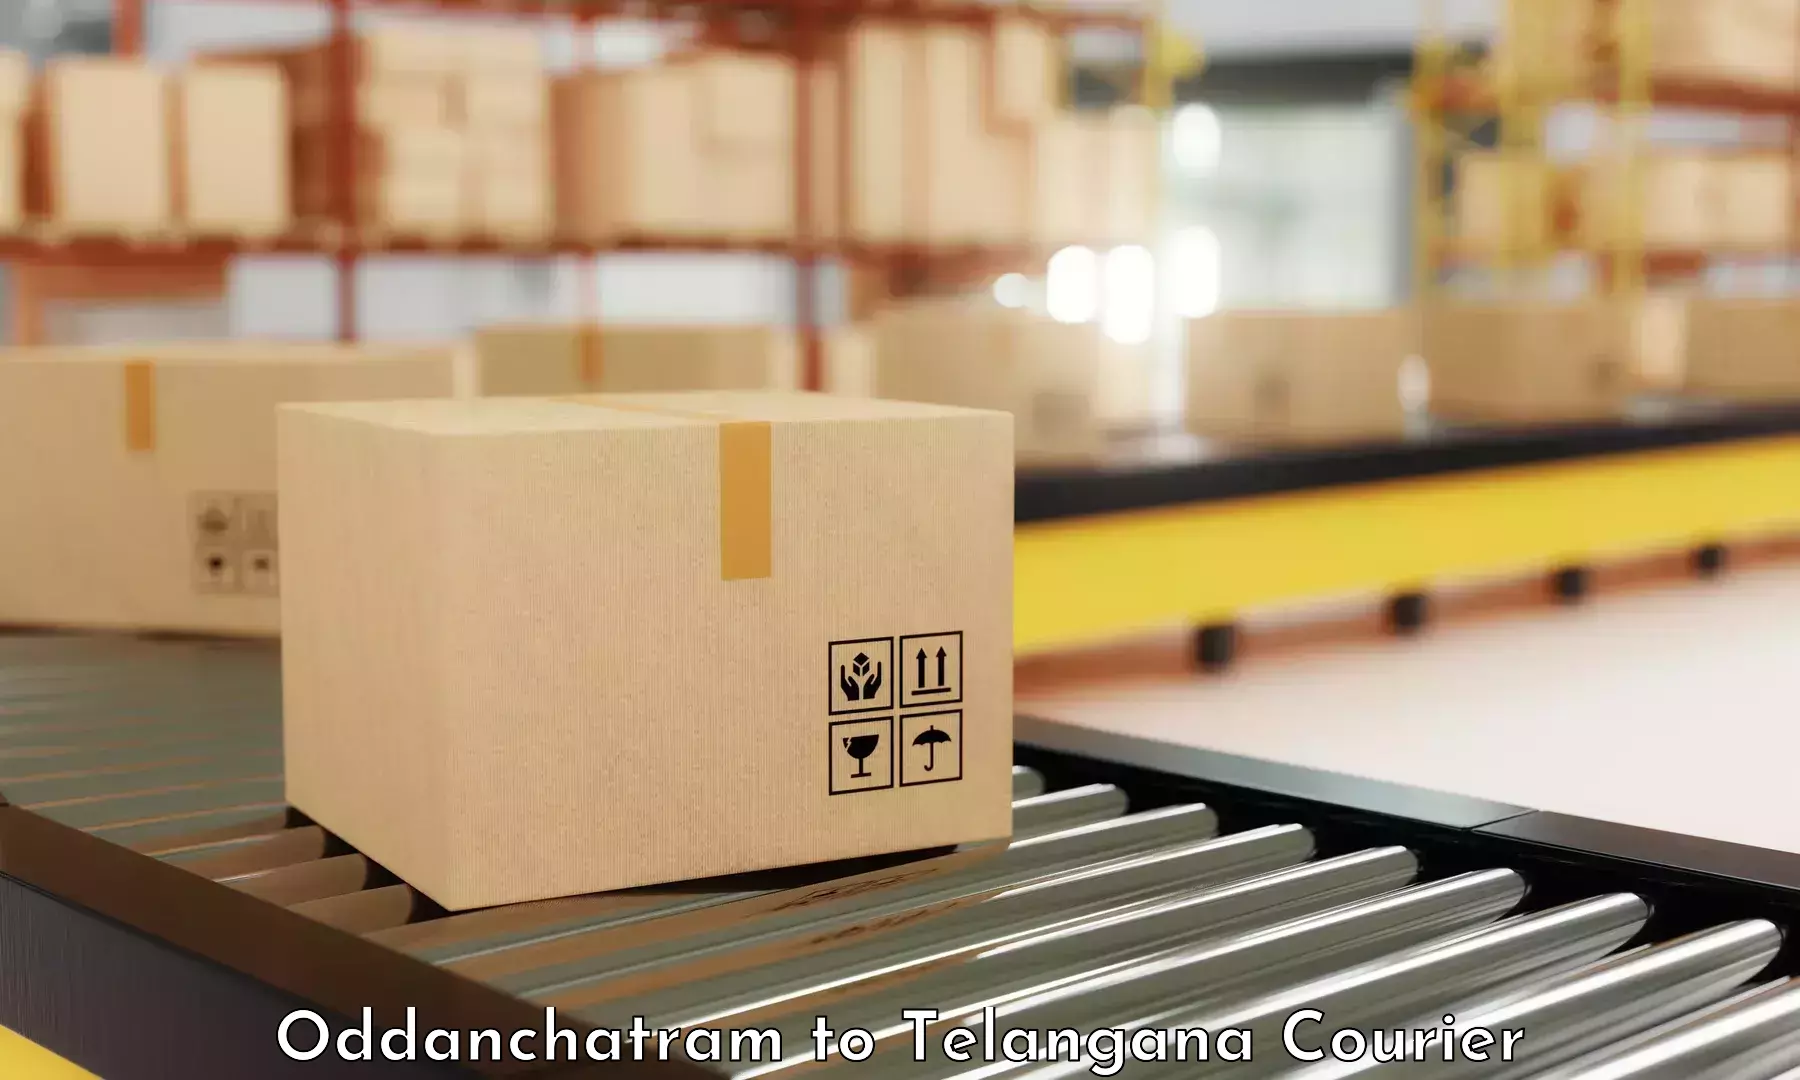 Efficient logistics management Oddanchatram to Odela